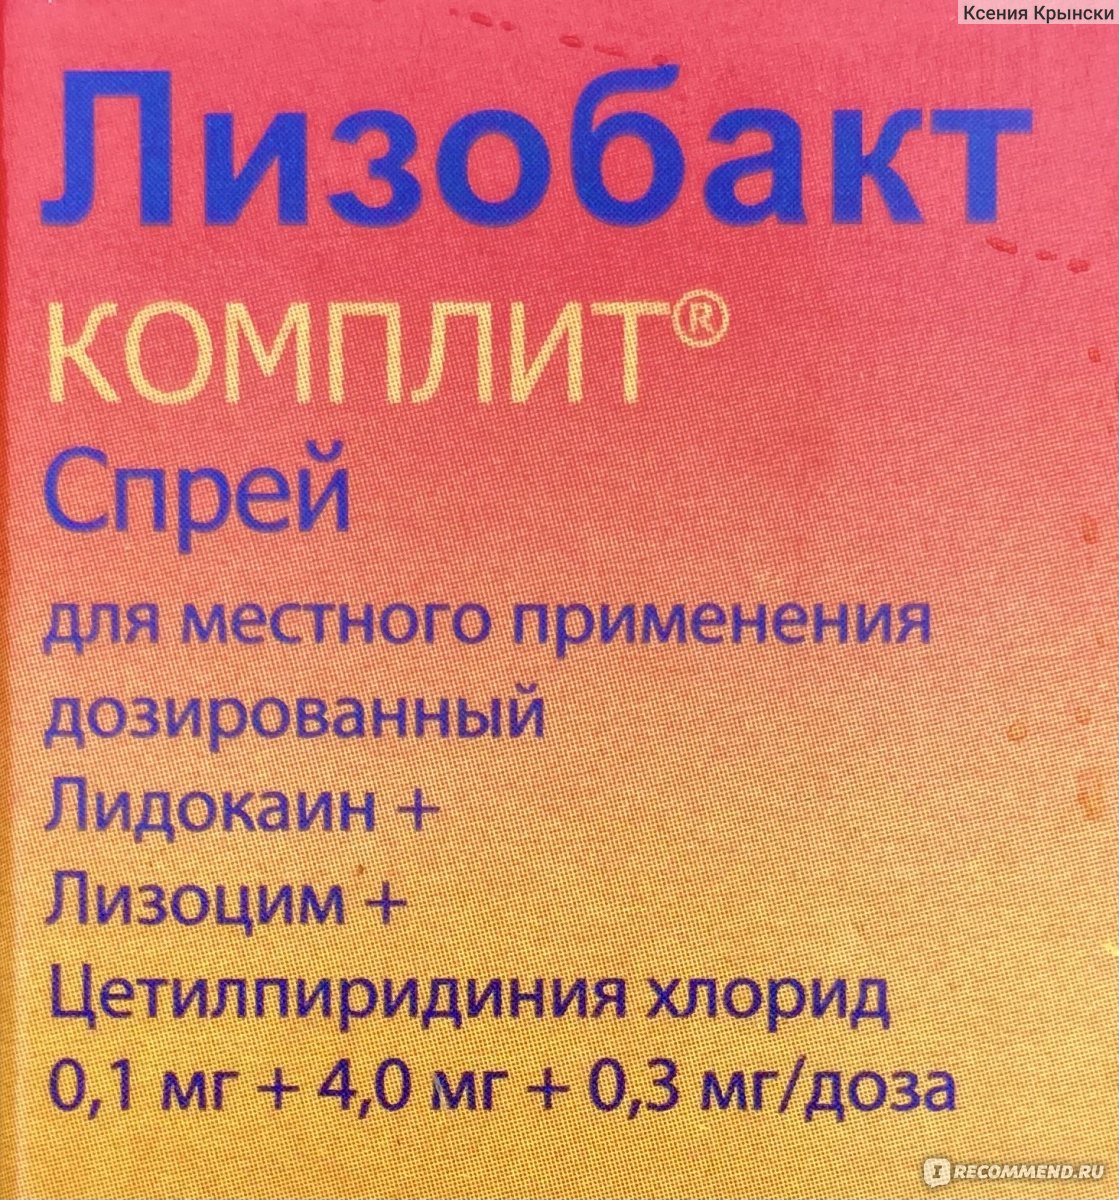 Антисептическое средство Bosnalijek Спрей для местного применения .